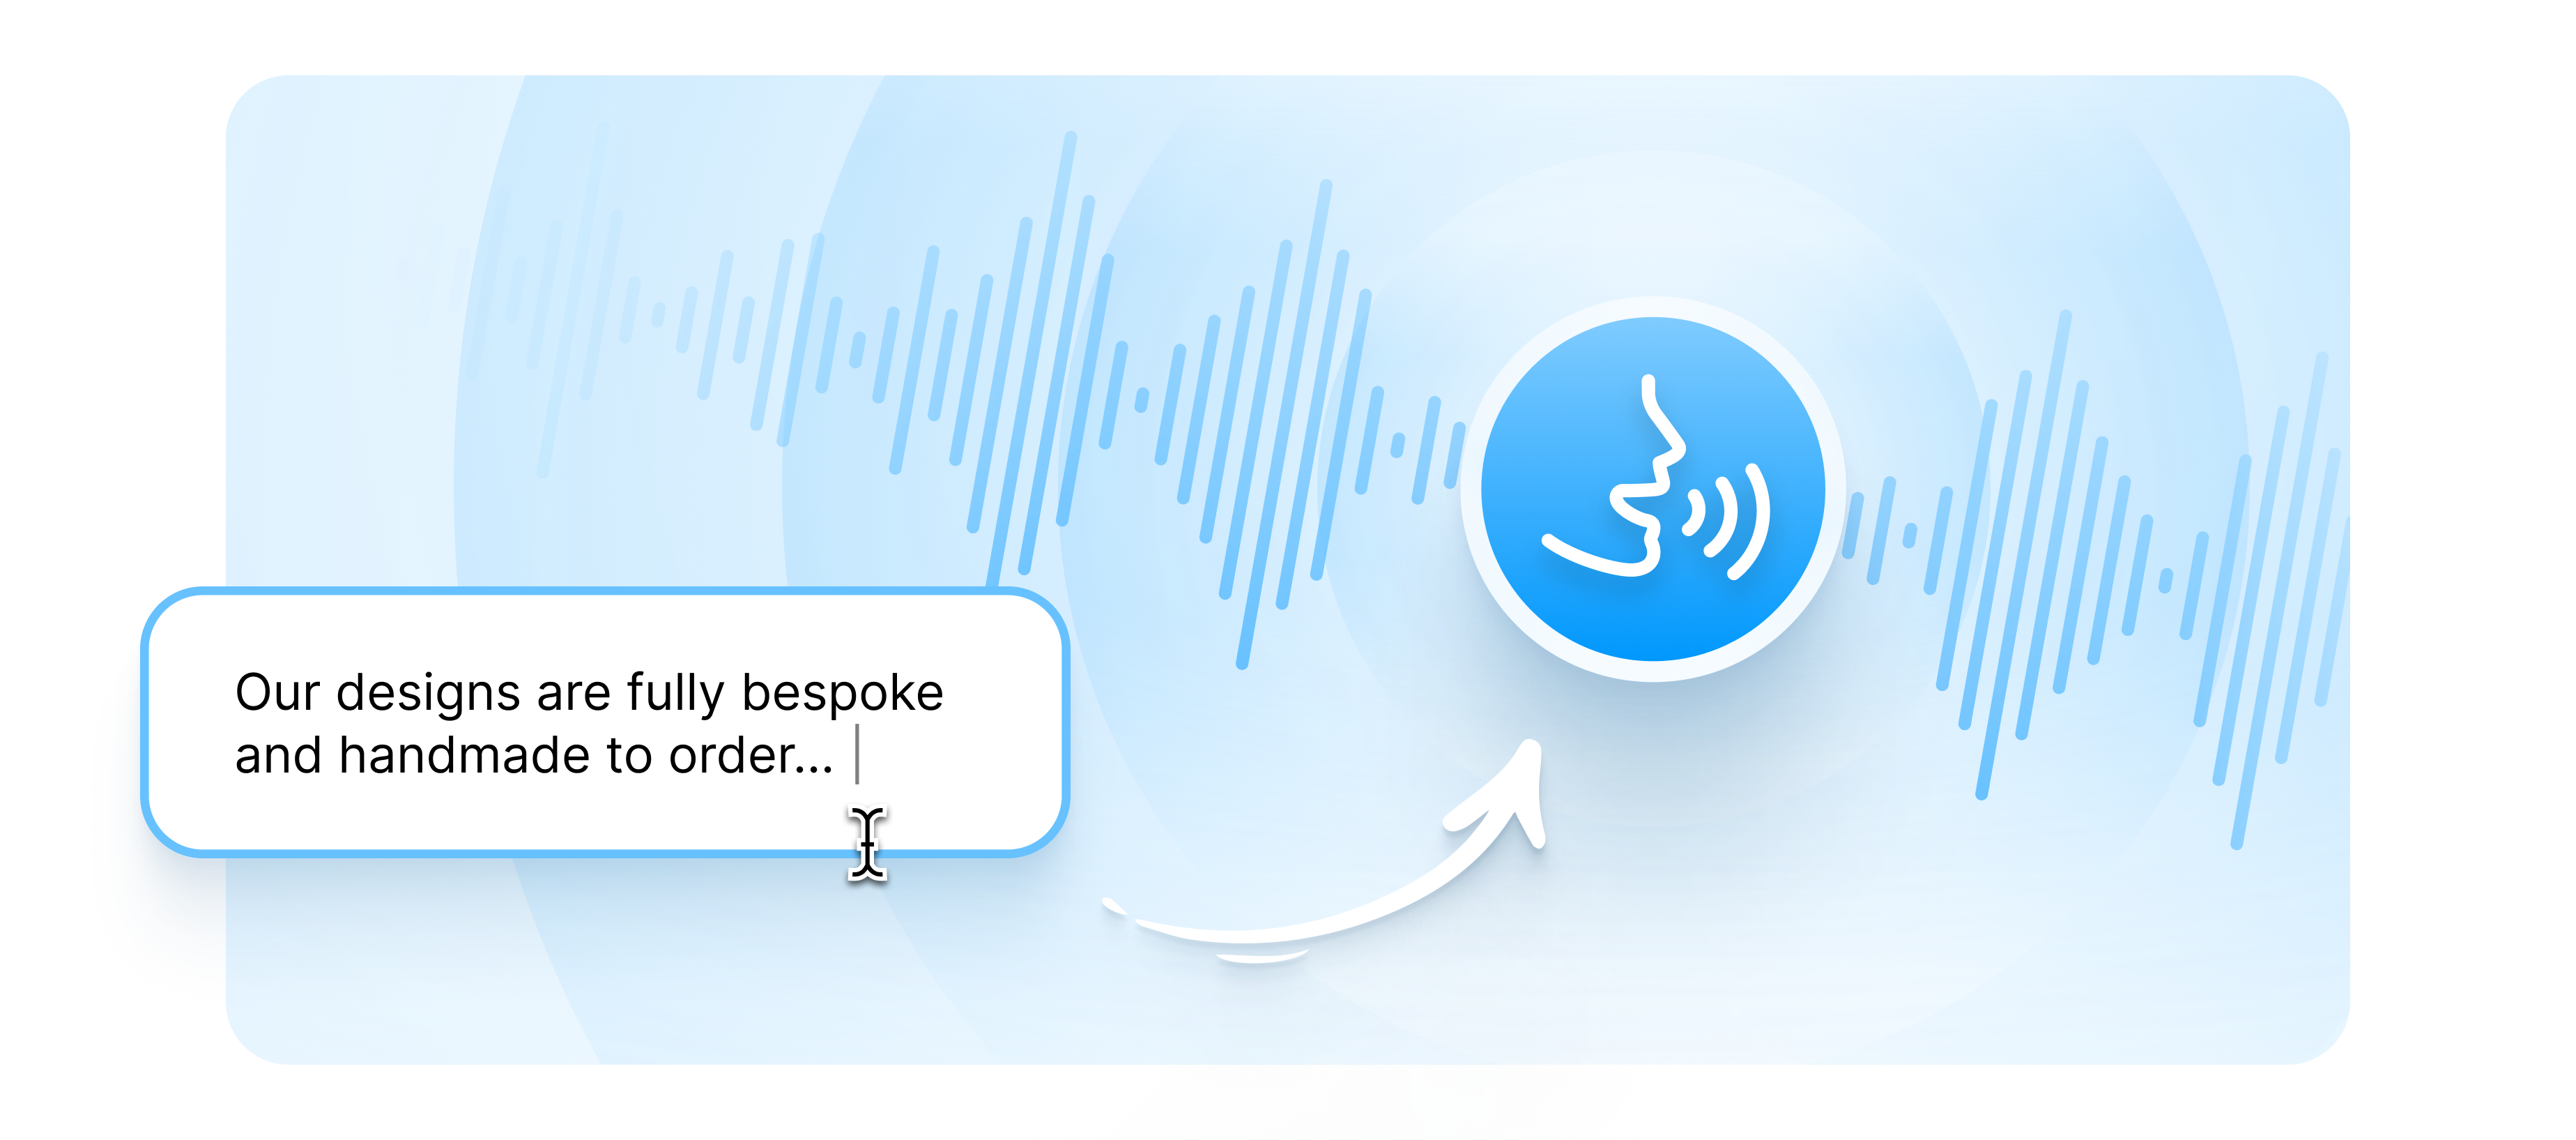 spongebob narrator voice generator text to speech